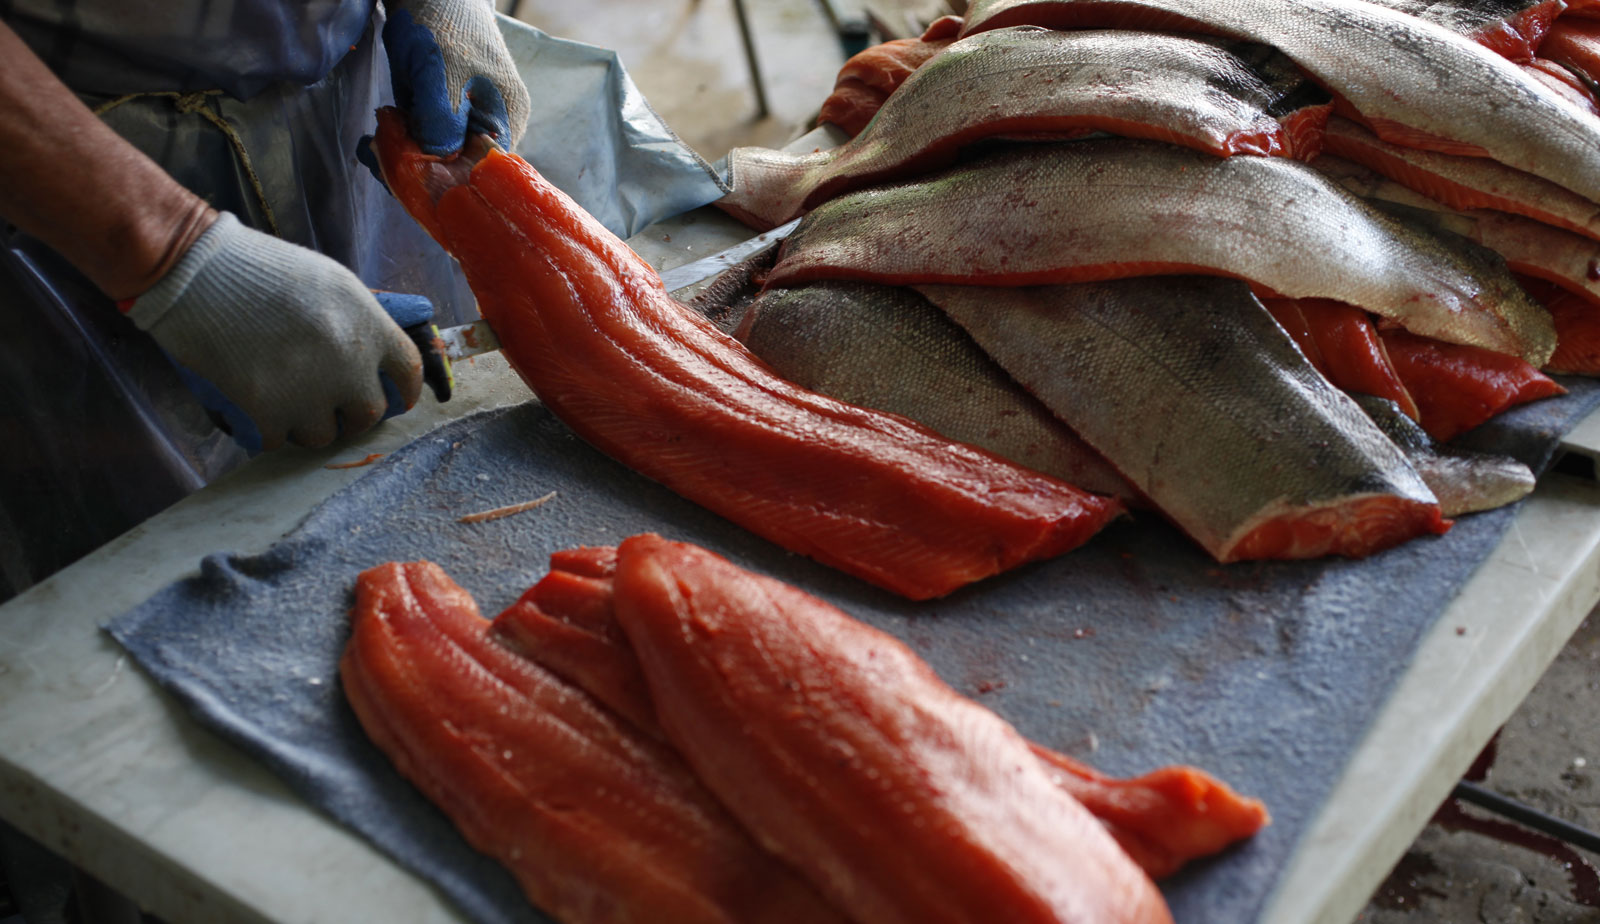 Un homme filète un saumon frais. Il porte des gants et il tient un couteau dans sa main droite et un morceau de poisson dans l’autre. À droite de l’image il y a un tas de peaux de saumon et à gauche, un tas de filets.